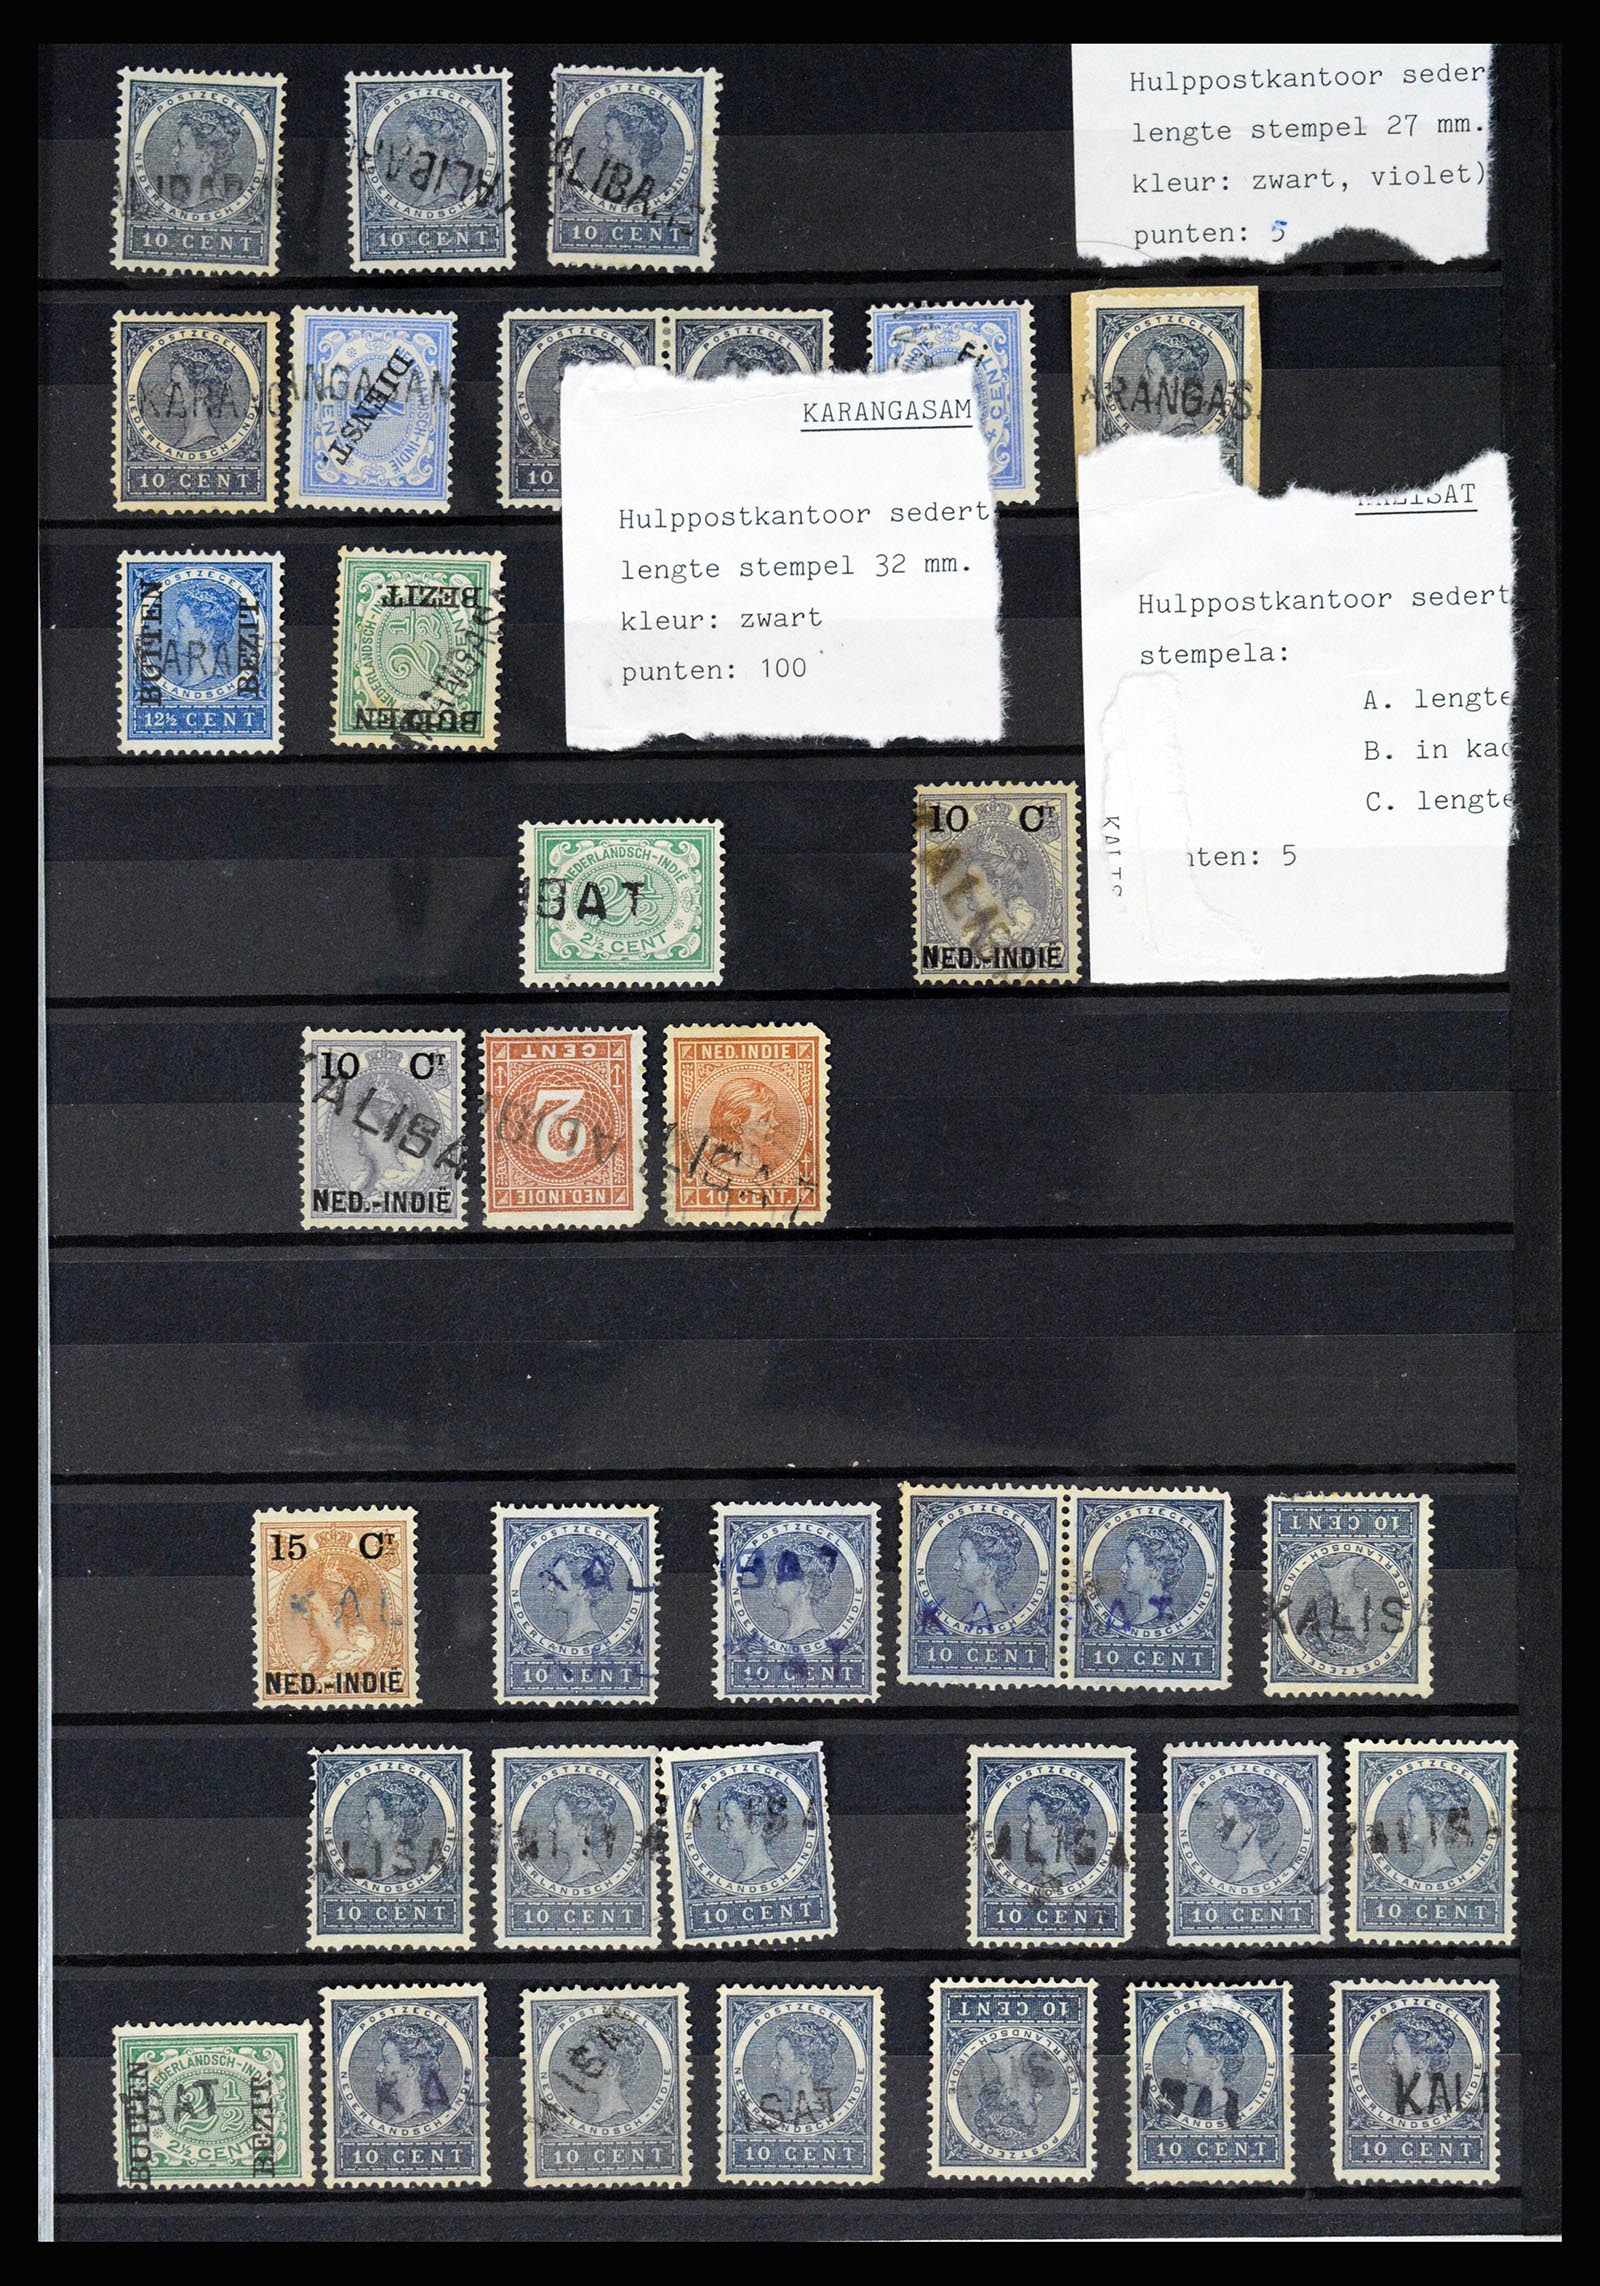 36512 029 - Stamp collection 36512 Nederlands Indië stempels 1872-1930.